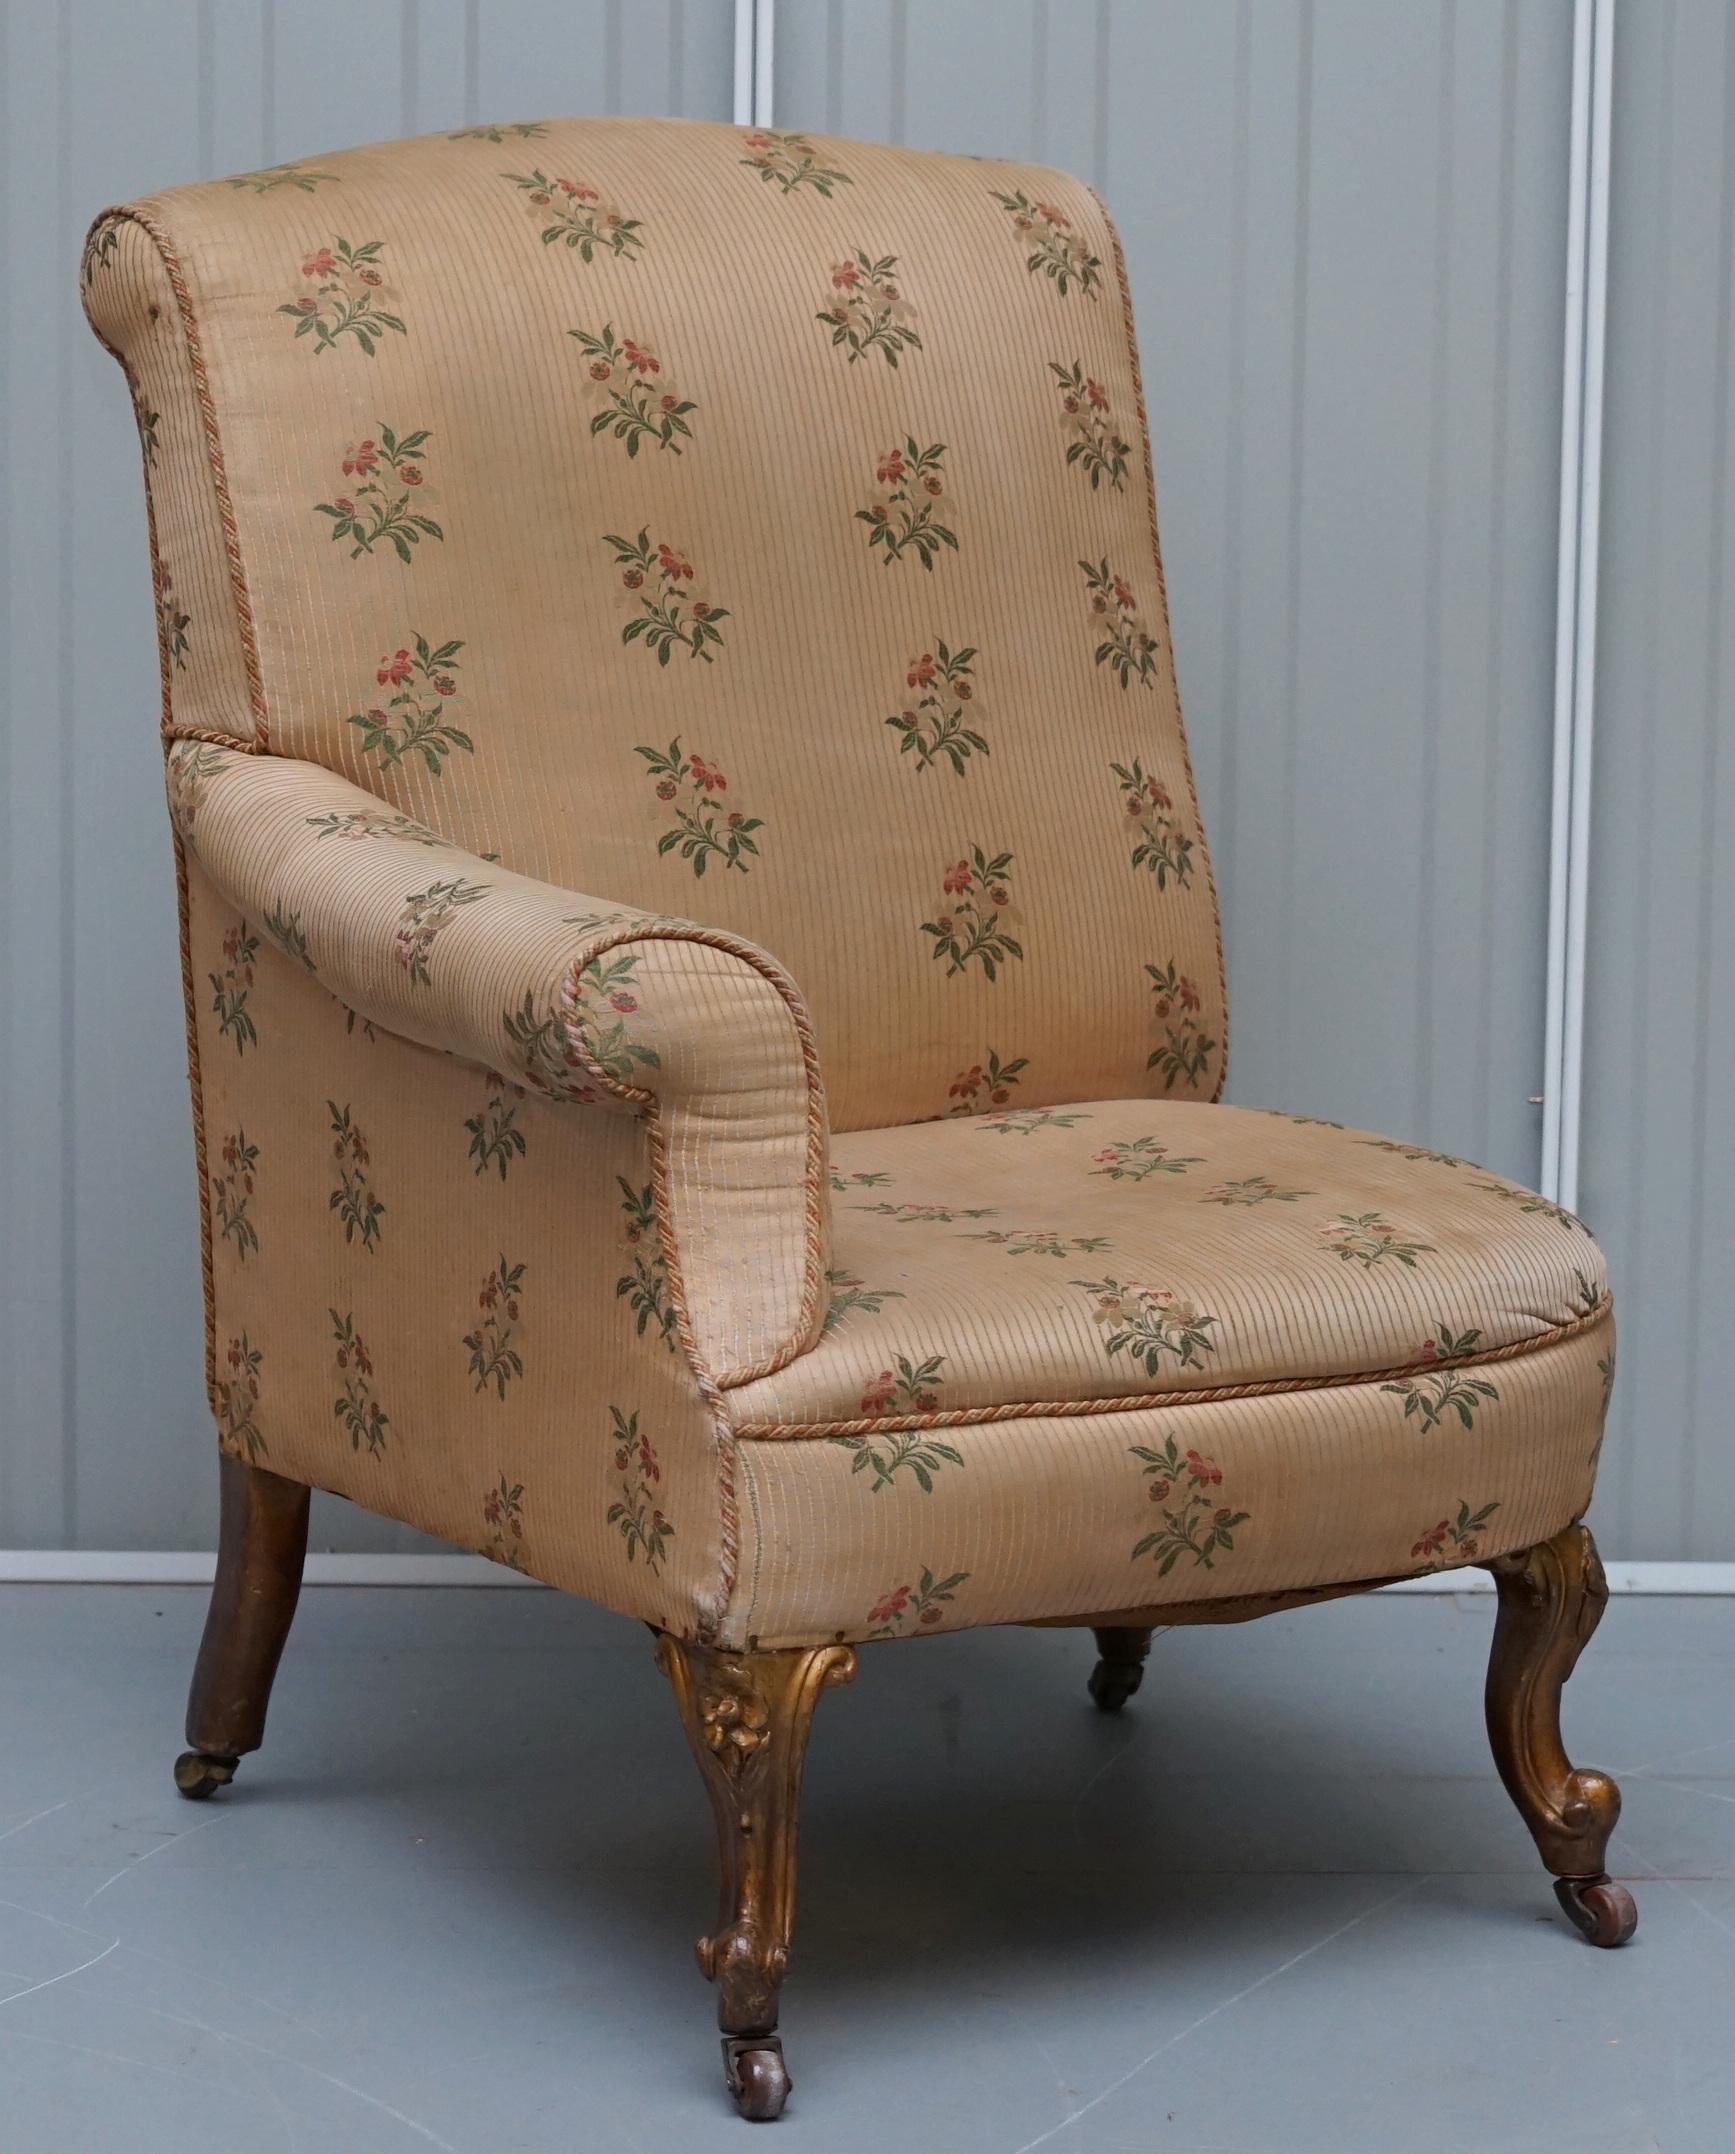 Wir freuen uns, dieses atemberaubende und sehr seltene Paar originaler viktorianischer asymmetrischer Sessel aus Vergoldungsholz mit gestickten Vogelpolstern zum Verkauf anbieten zu können

Bitte beachten Sie, dass diese Auktion zwei Sessel